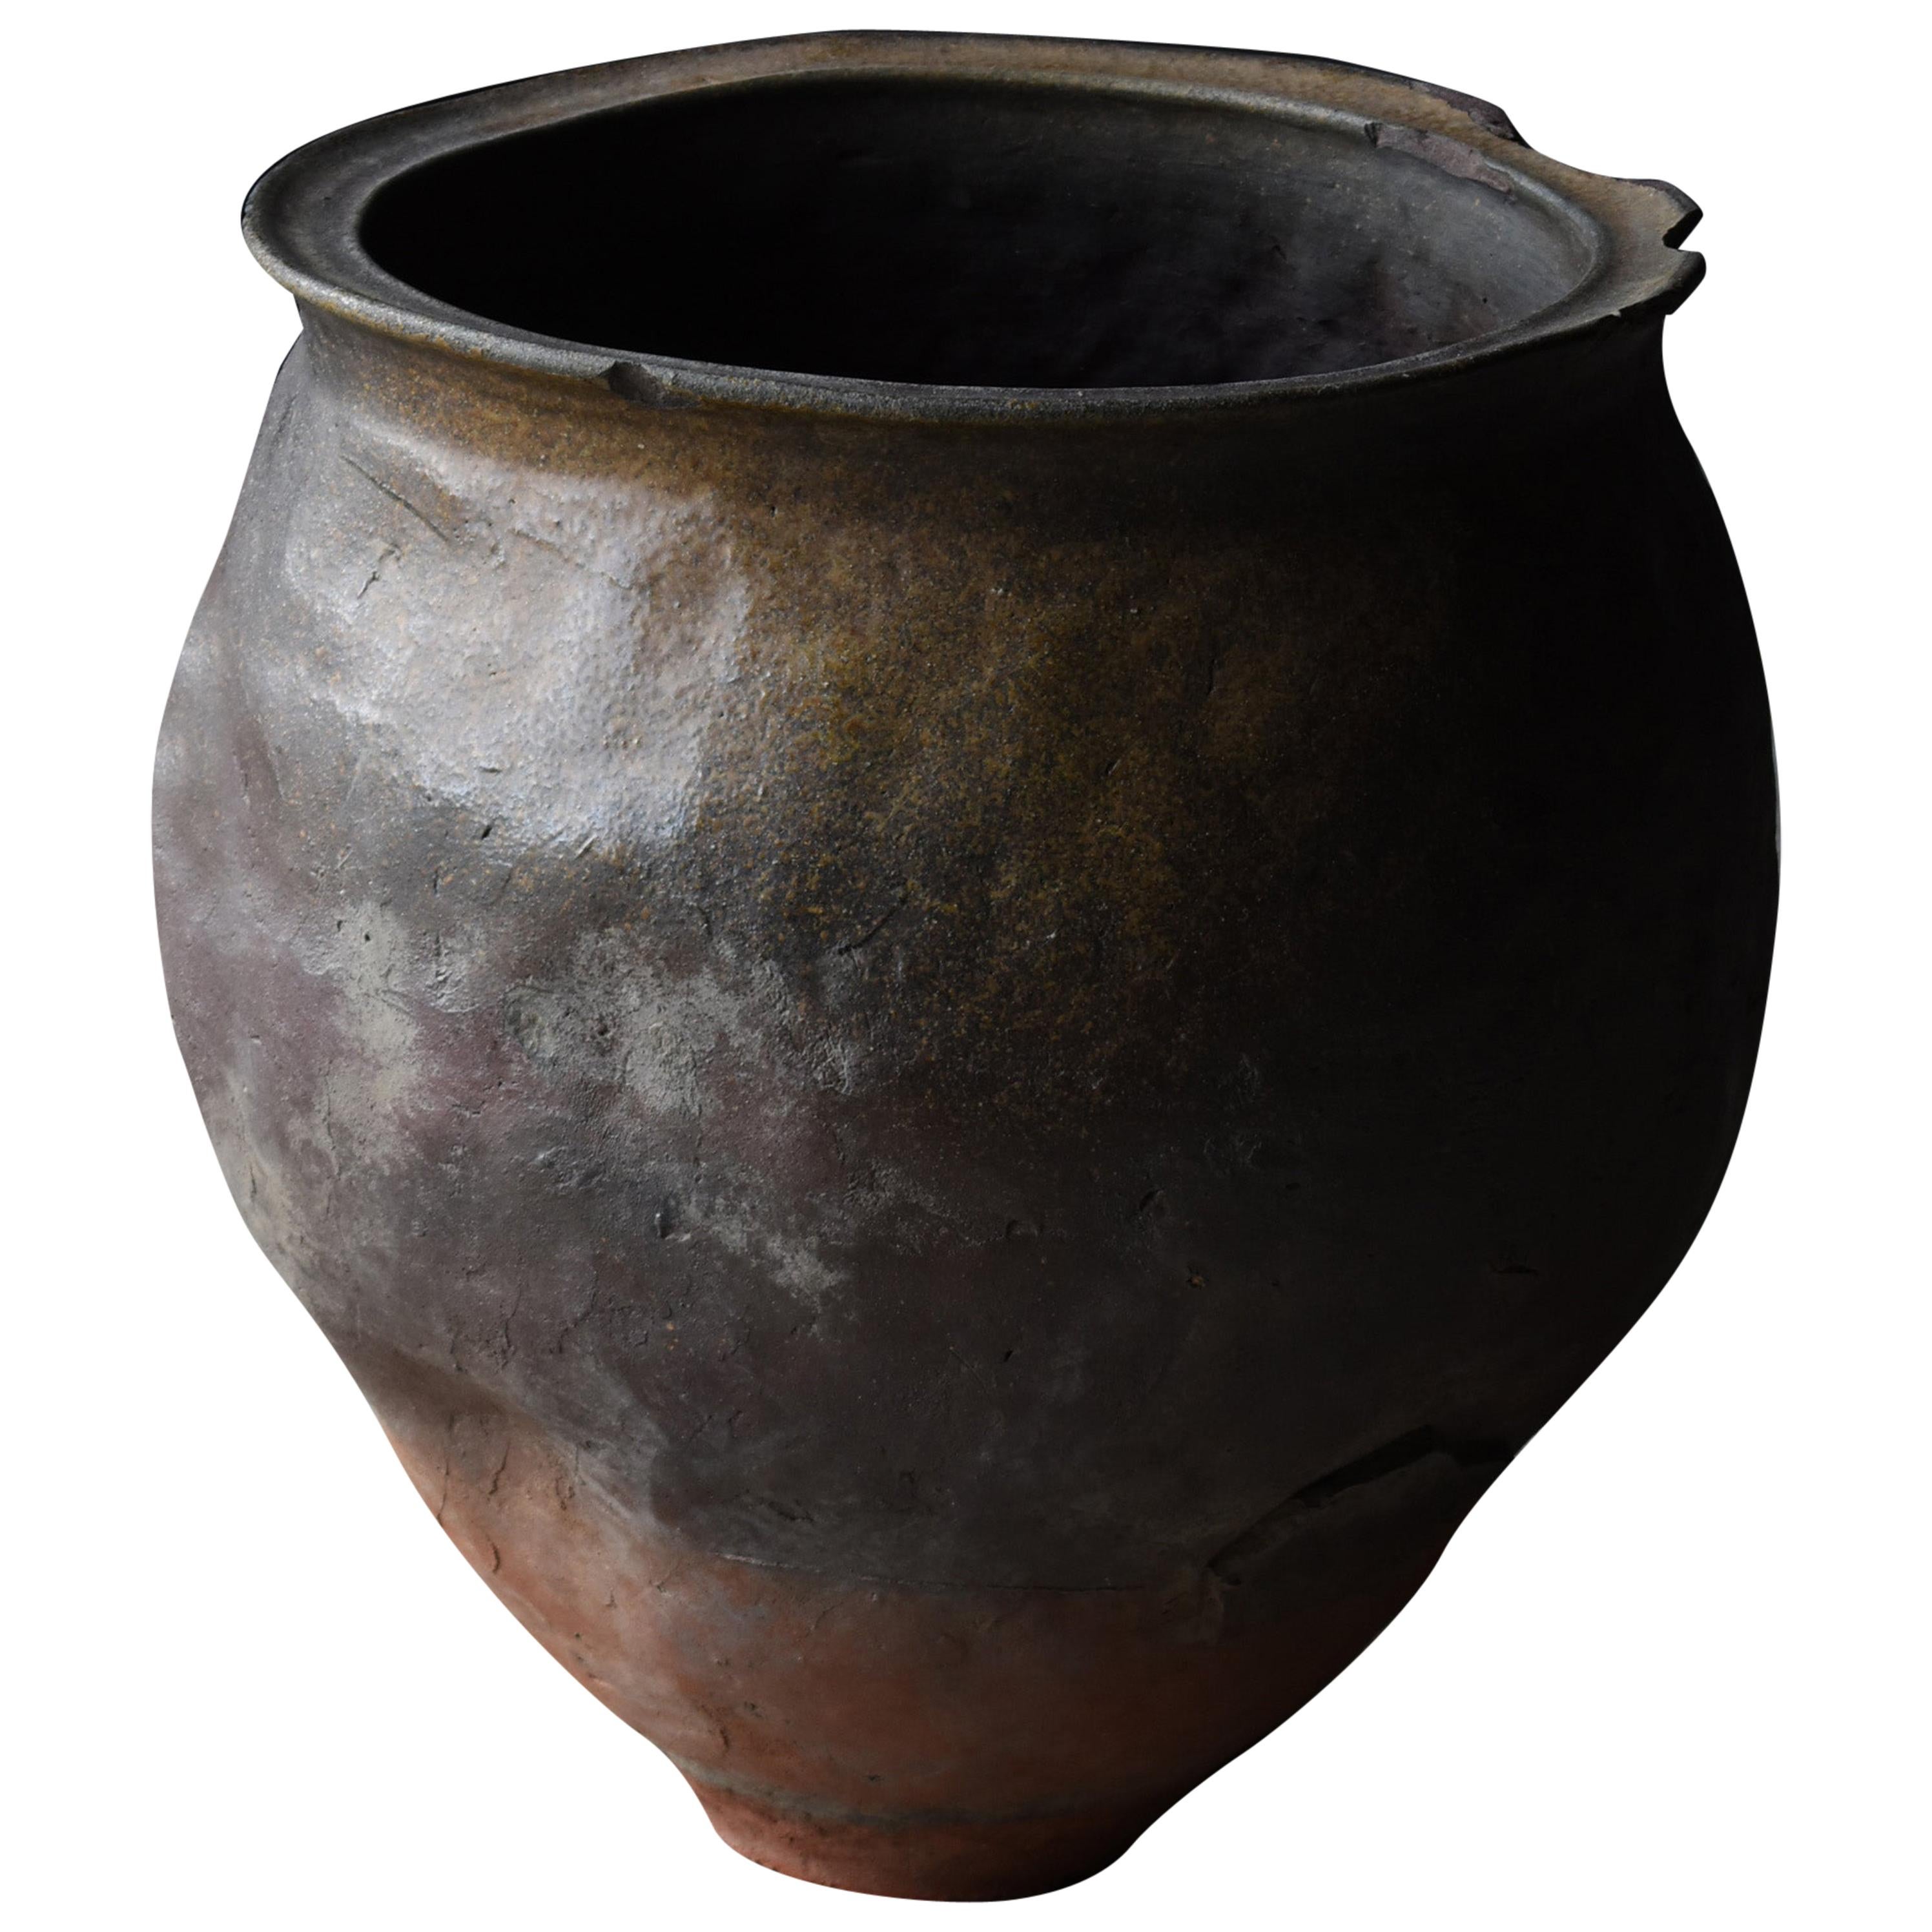 1700s-1860s Japanese Pottery Jar Edo Period Tsubo Ceramic Vase Wabisabi